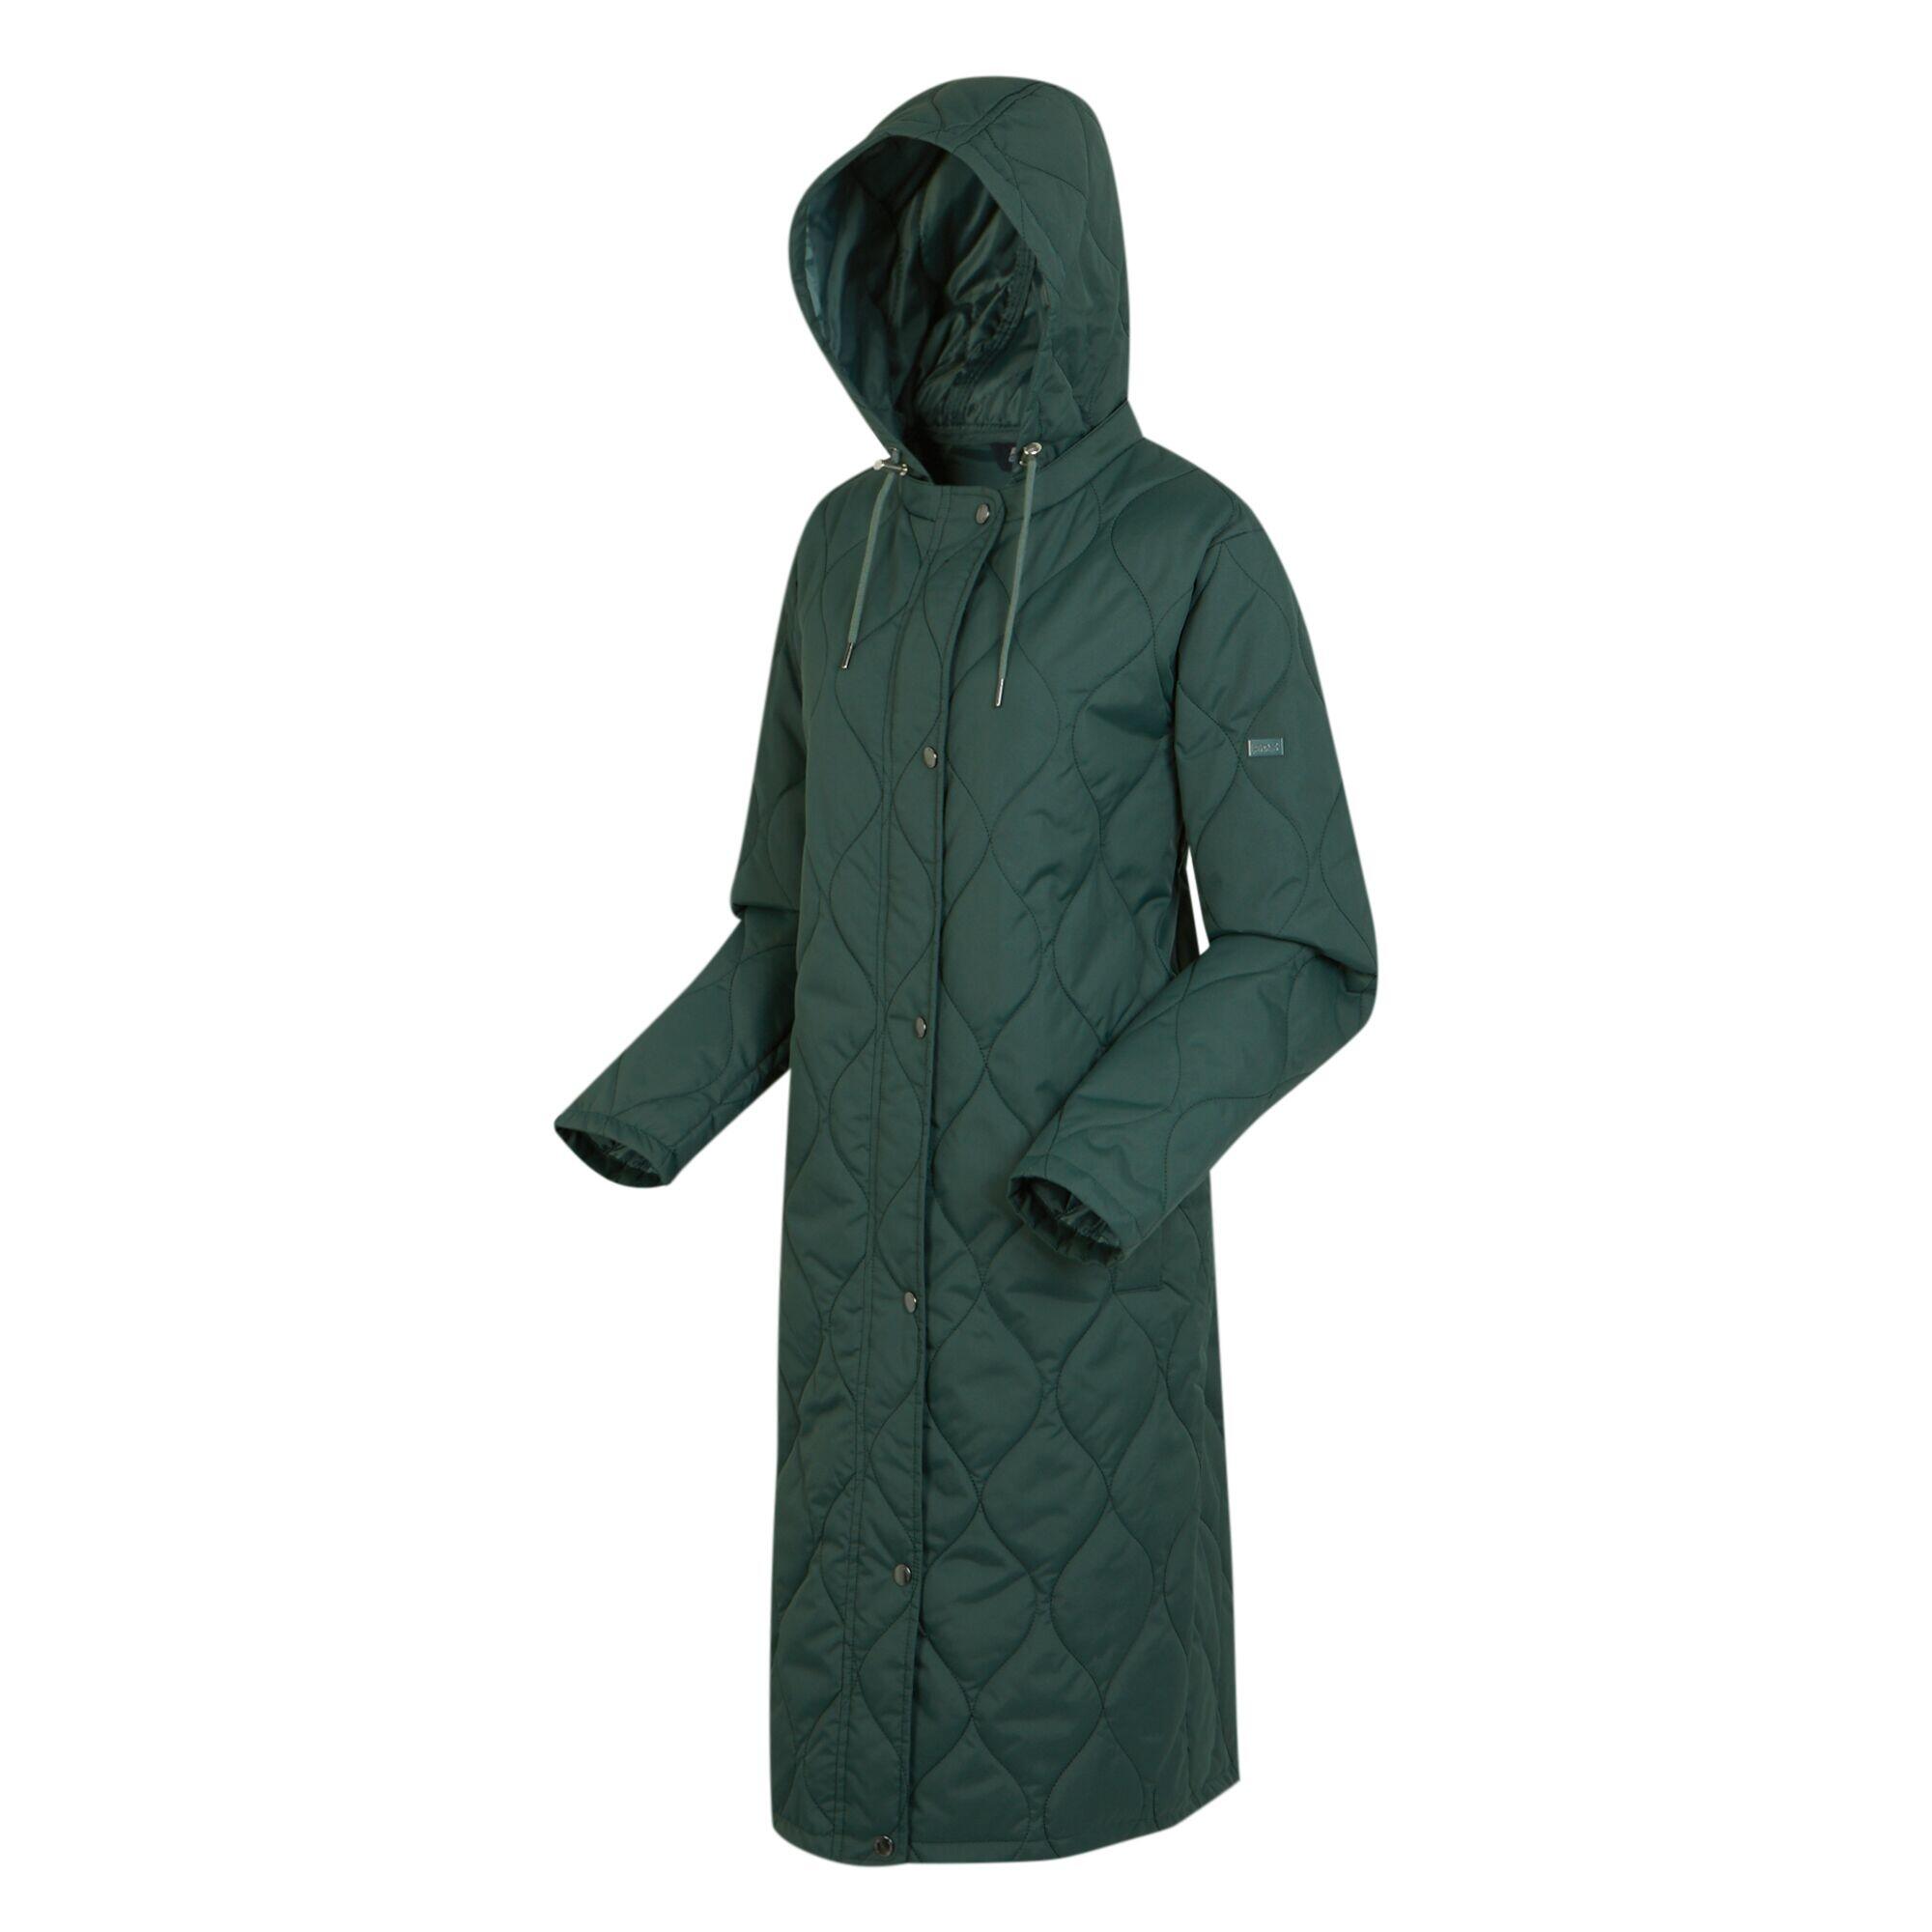 Womens/Ladies Jaycee Quilted Hooded Jacket (Darkest Spruce/Dark Forest Green) 4/5